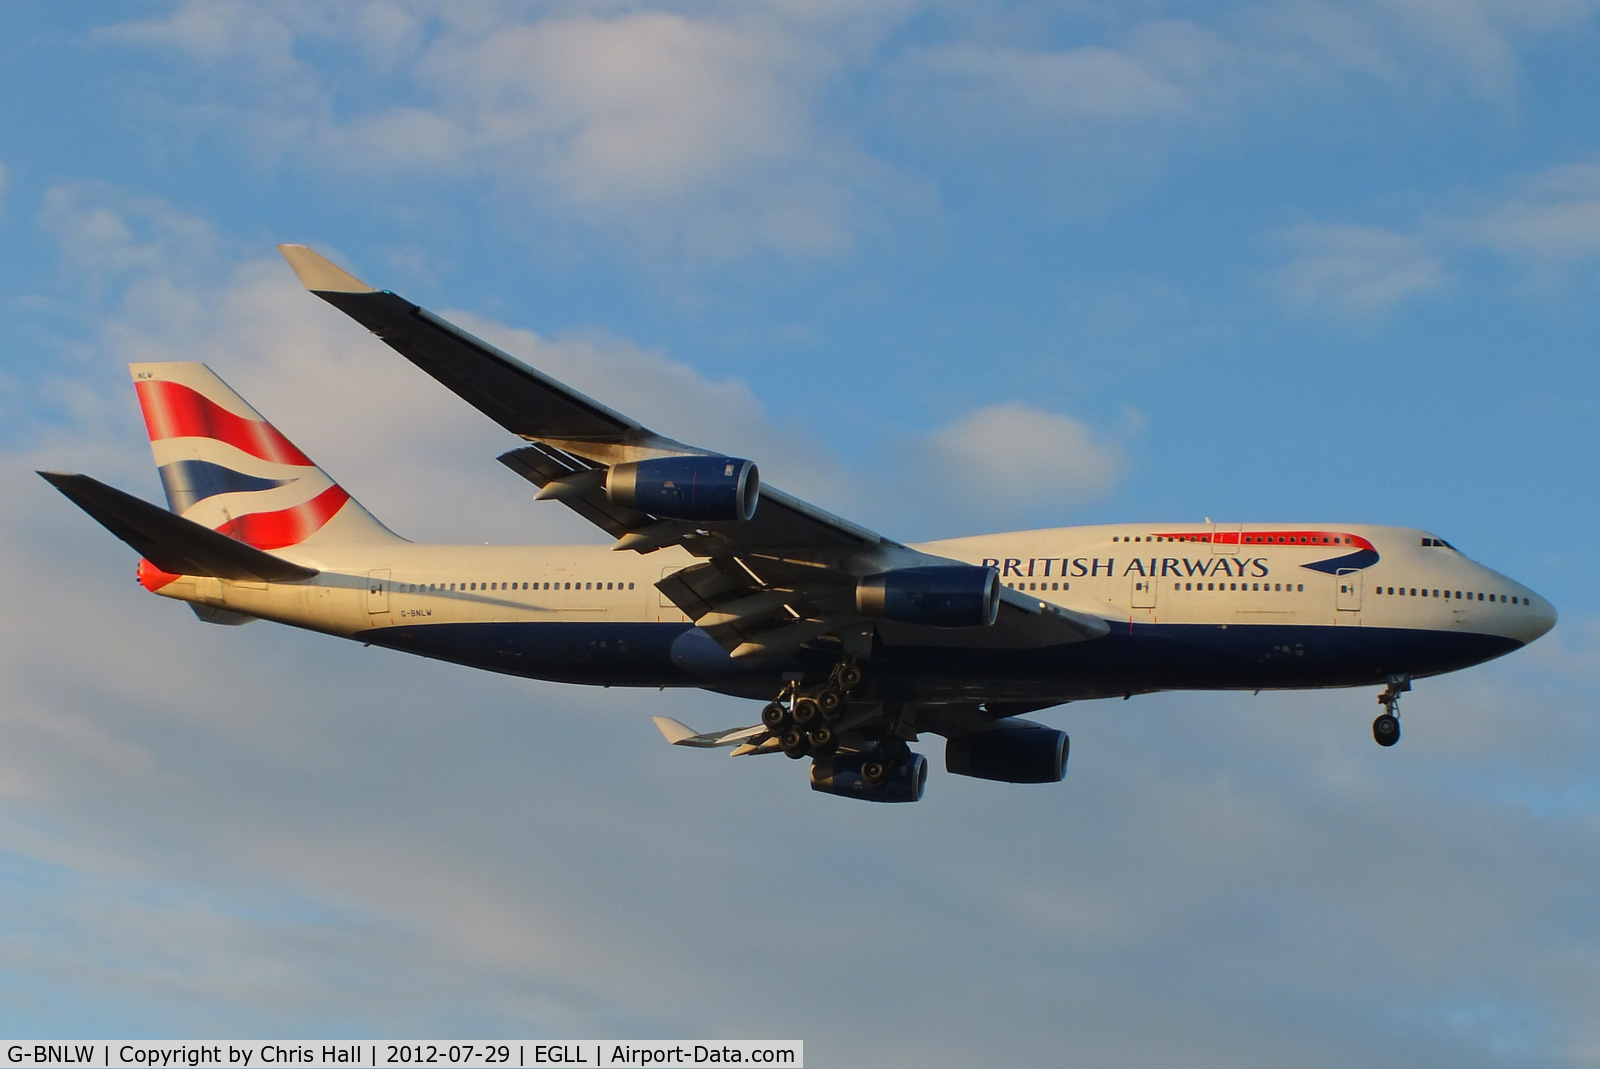 G-BNLW, 1992 Boeing 747-436 C/N 25432, British Airways